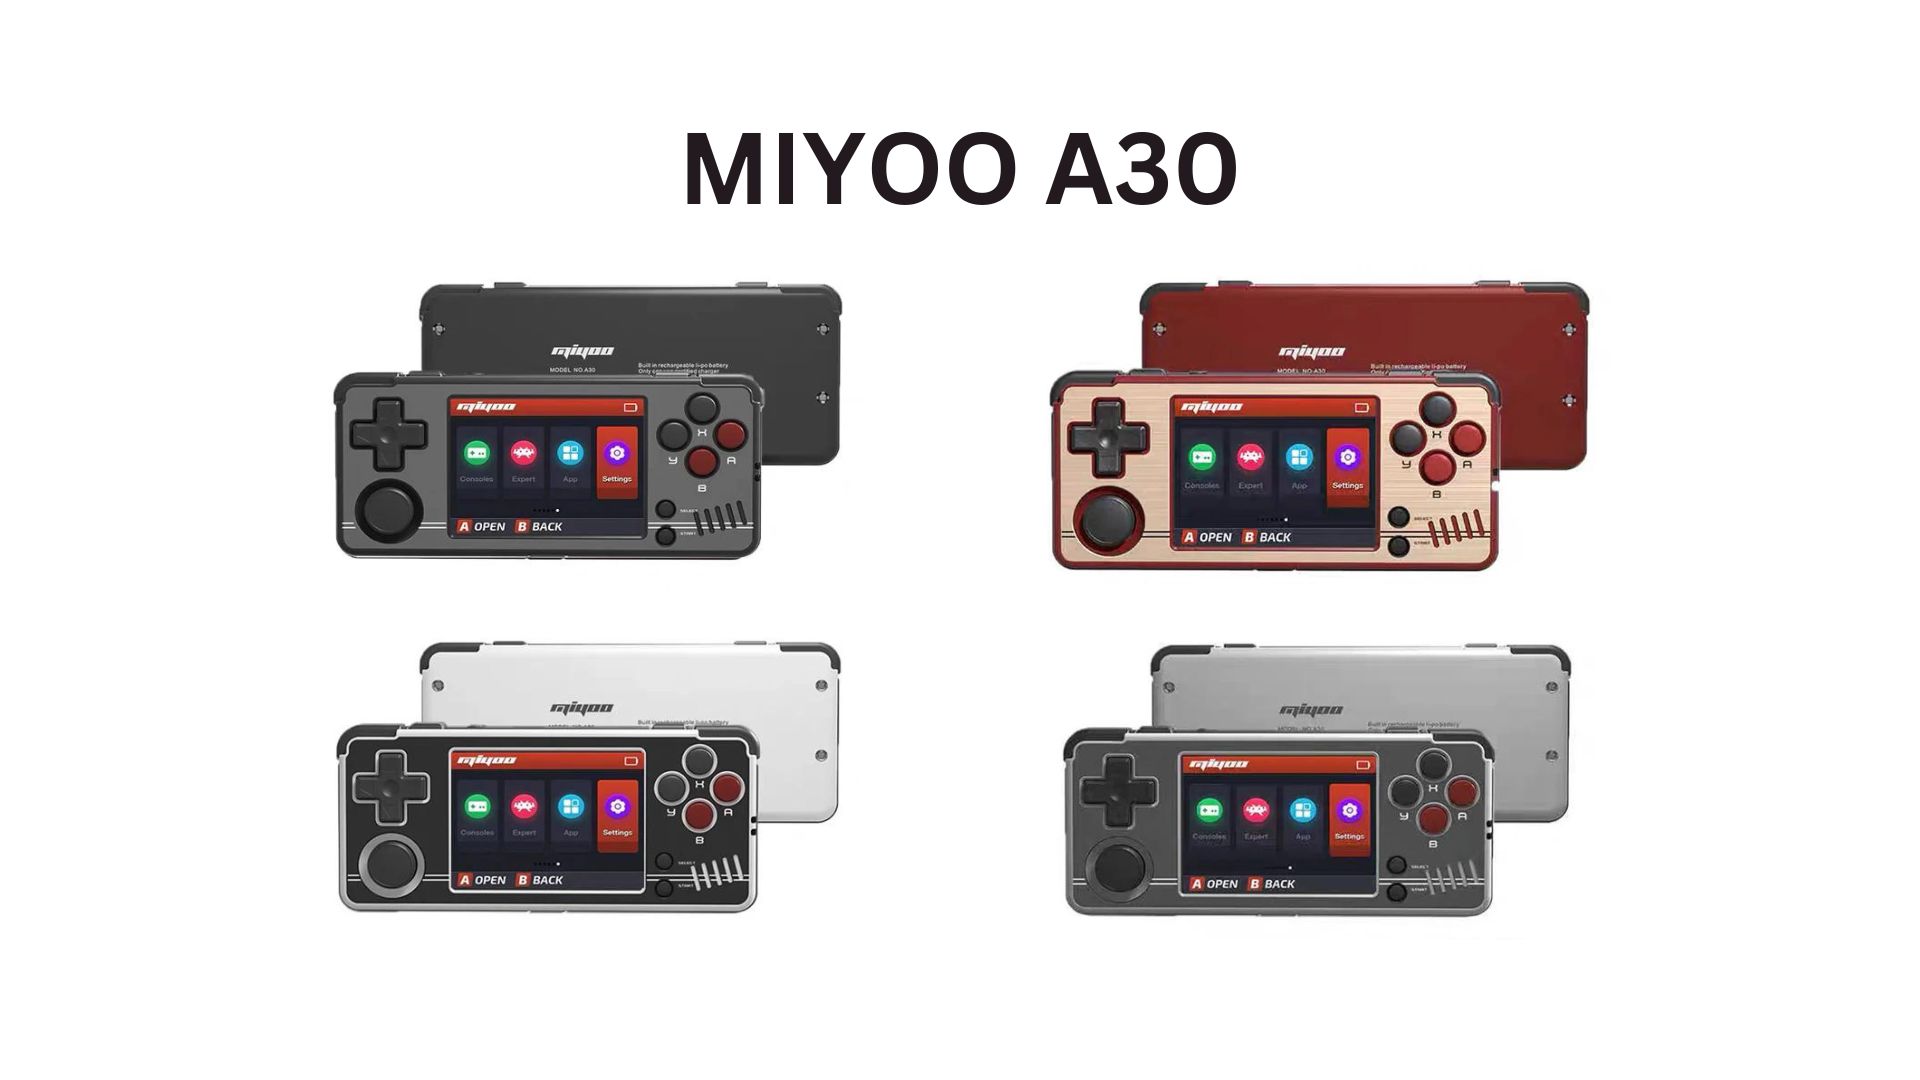 Introducing the Miyoo A30 Retro Gaming Handheld